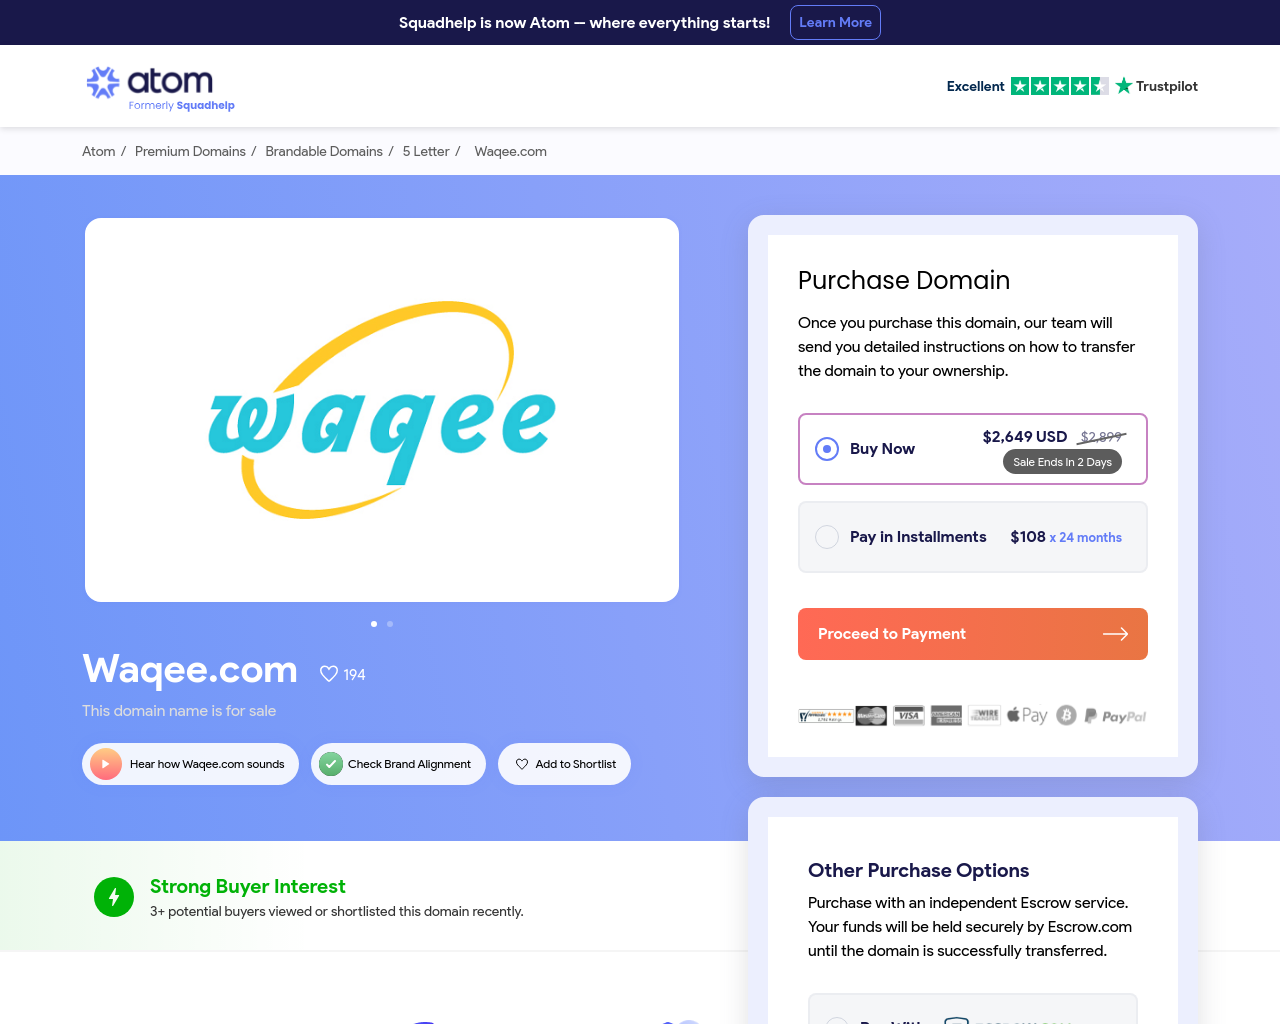 waqee.com